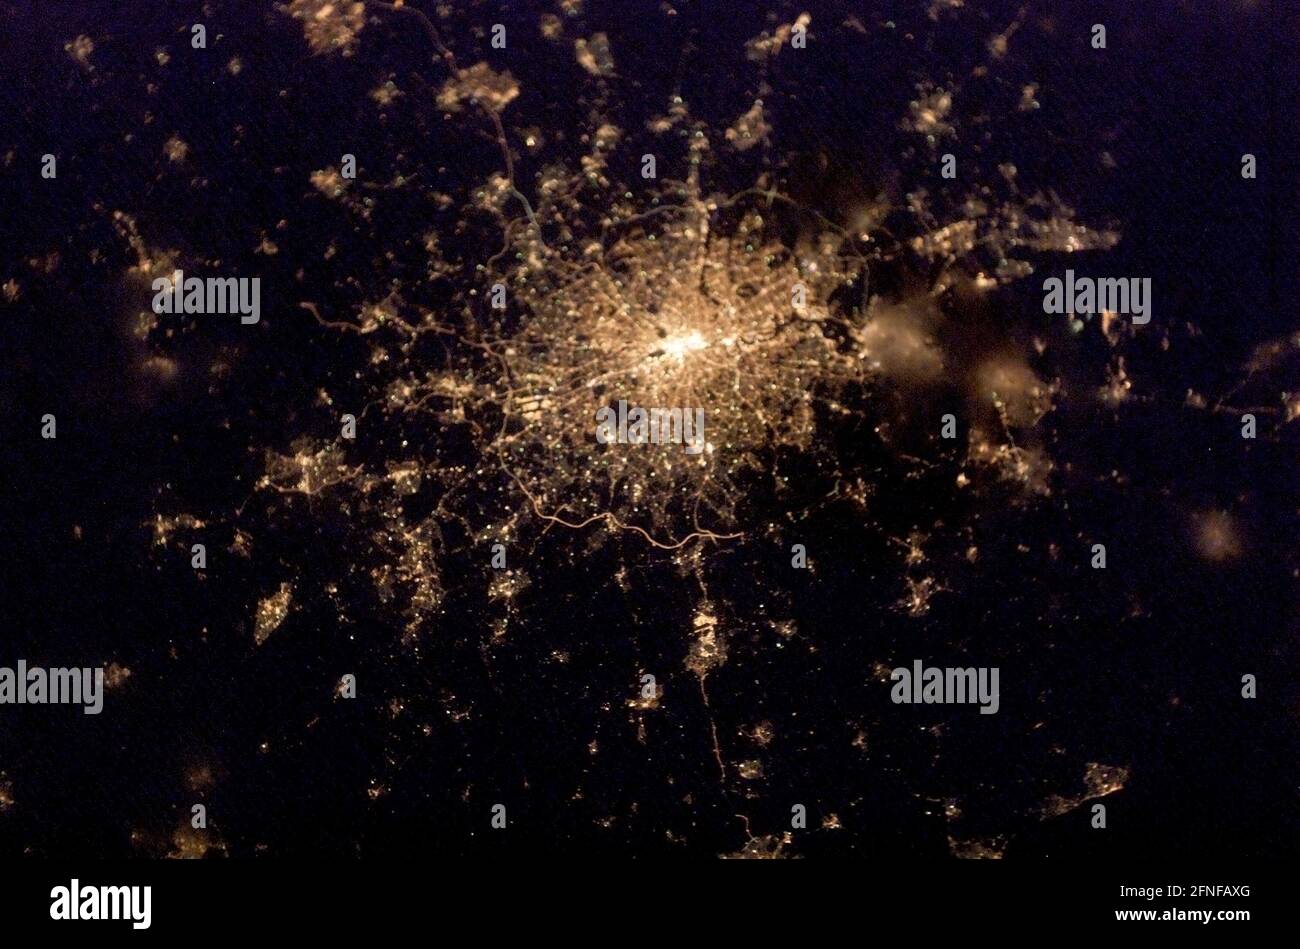 LONDRES, Royaume-Uni - 04 février 2003 - les lumières de la ville de Londres, en Angleterre, ont été capturées avec un appareil photo numérique par l'un des membres de l'équipage de l'expédition 6 Banque D'Images